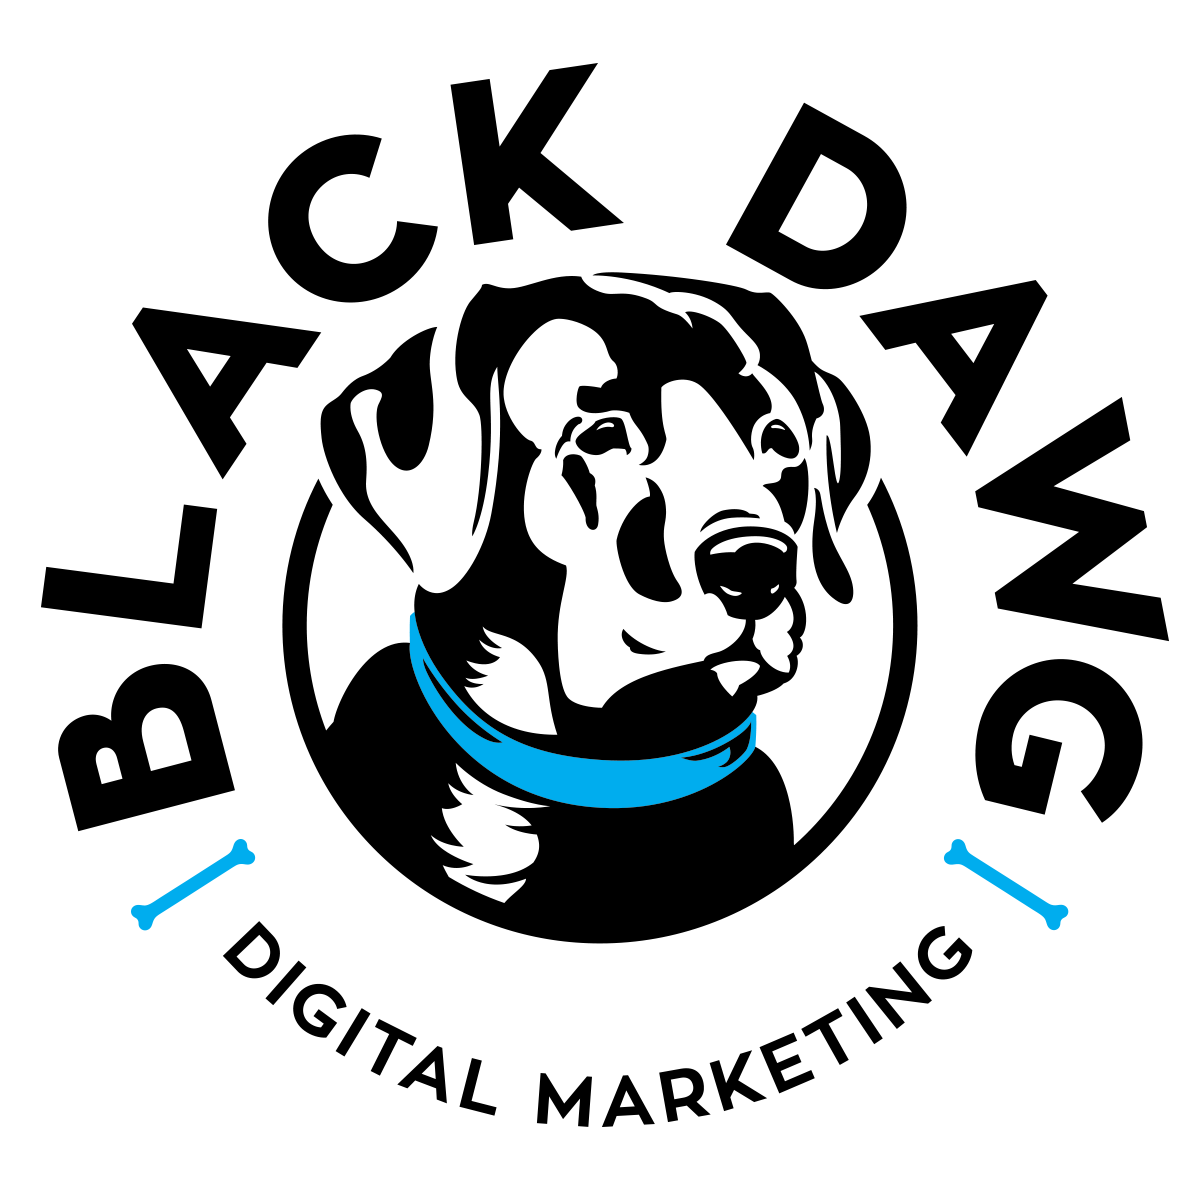 Black Dawg Digital Marketing profile on Qualified.One